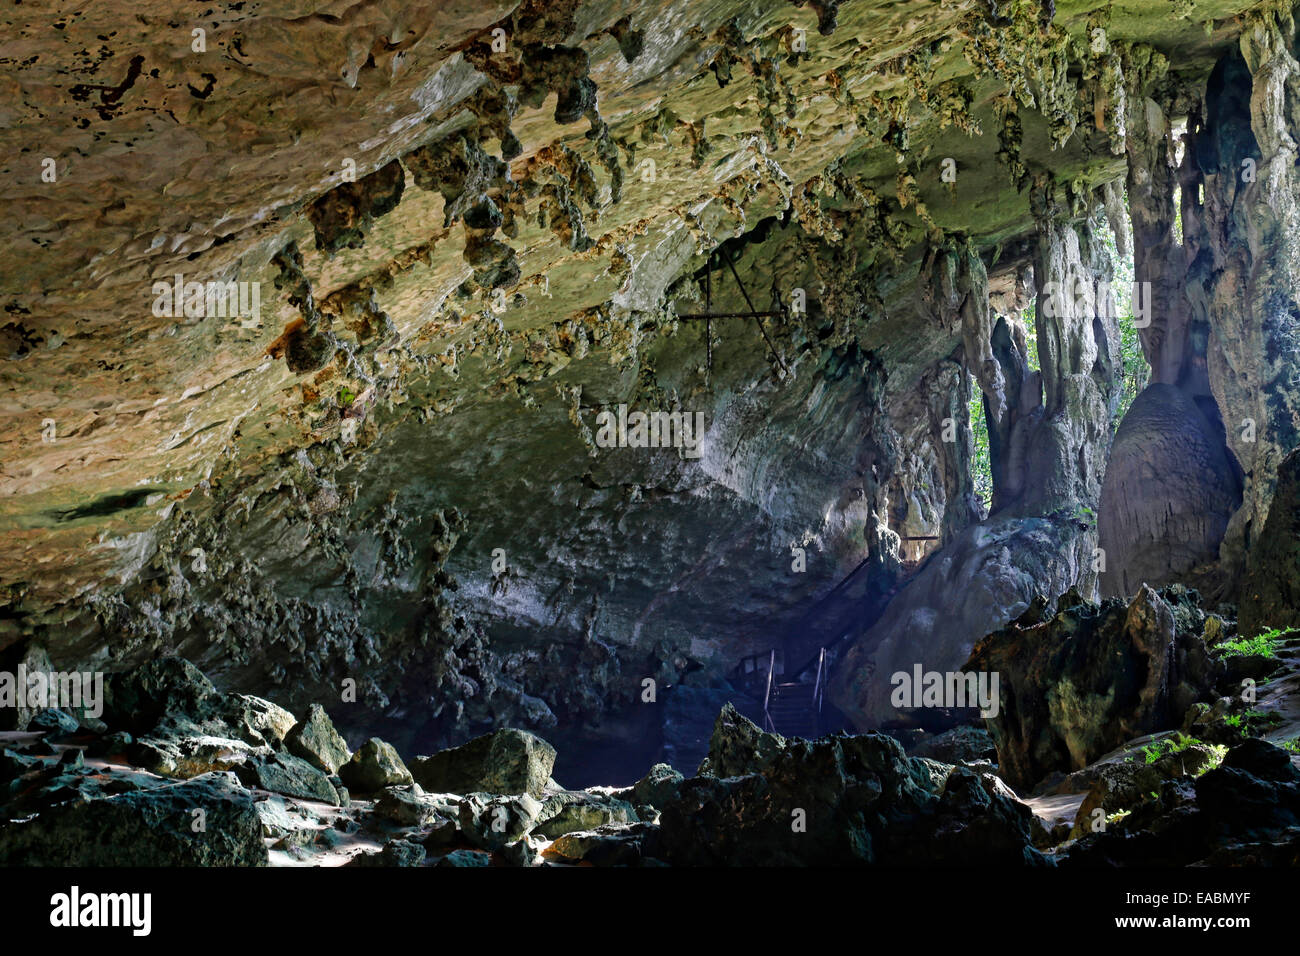 Trader's Cave, Niah National Park, Sarawak, Malaysia Stock Photo